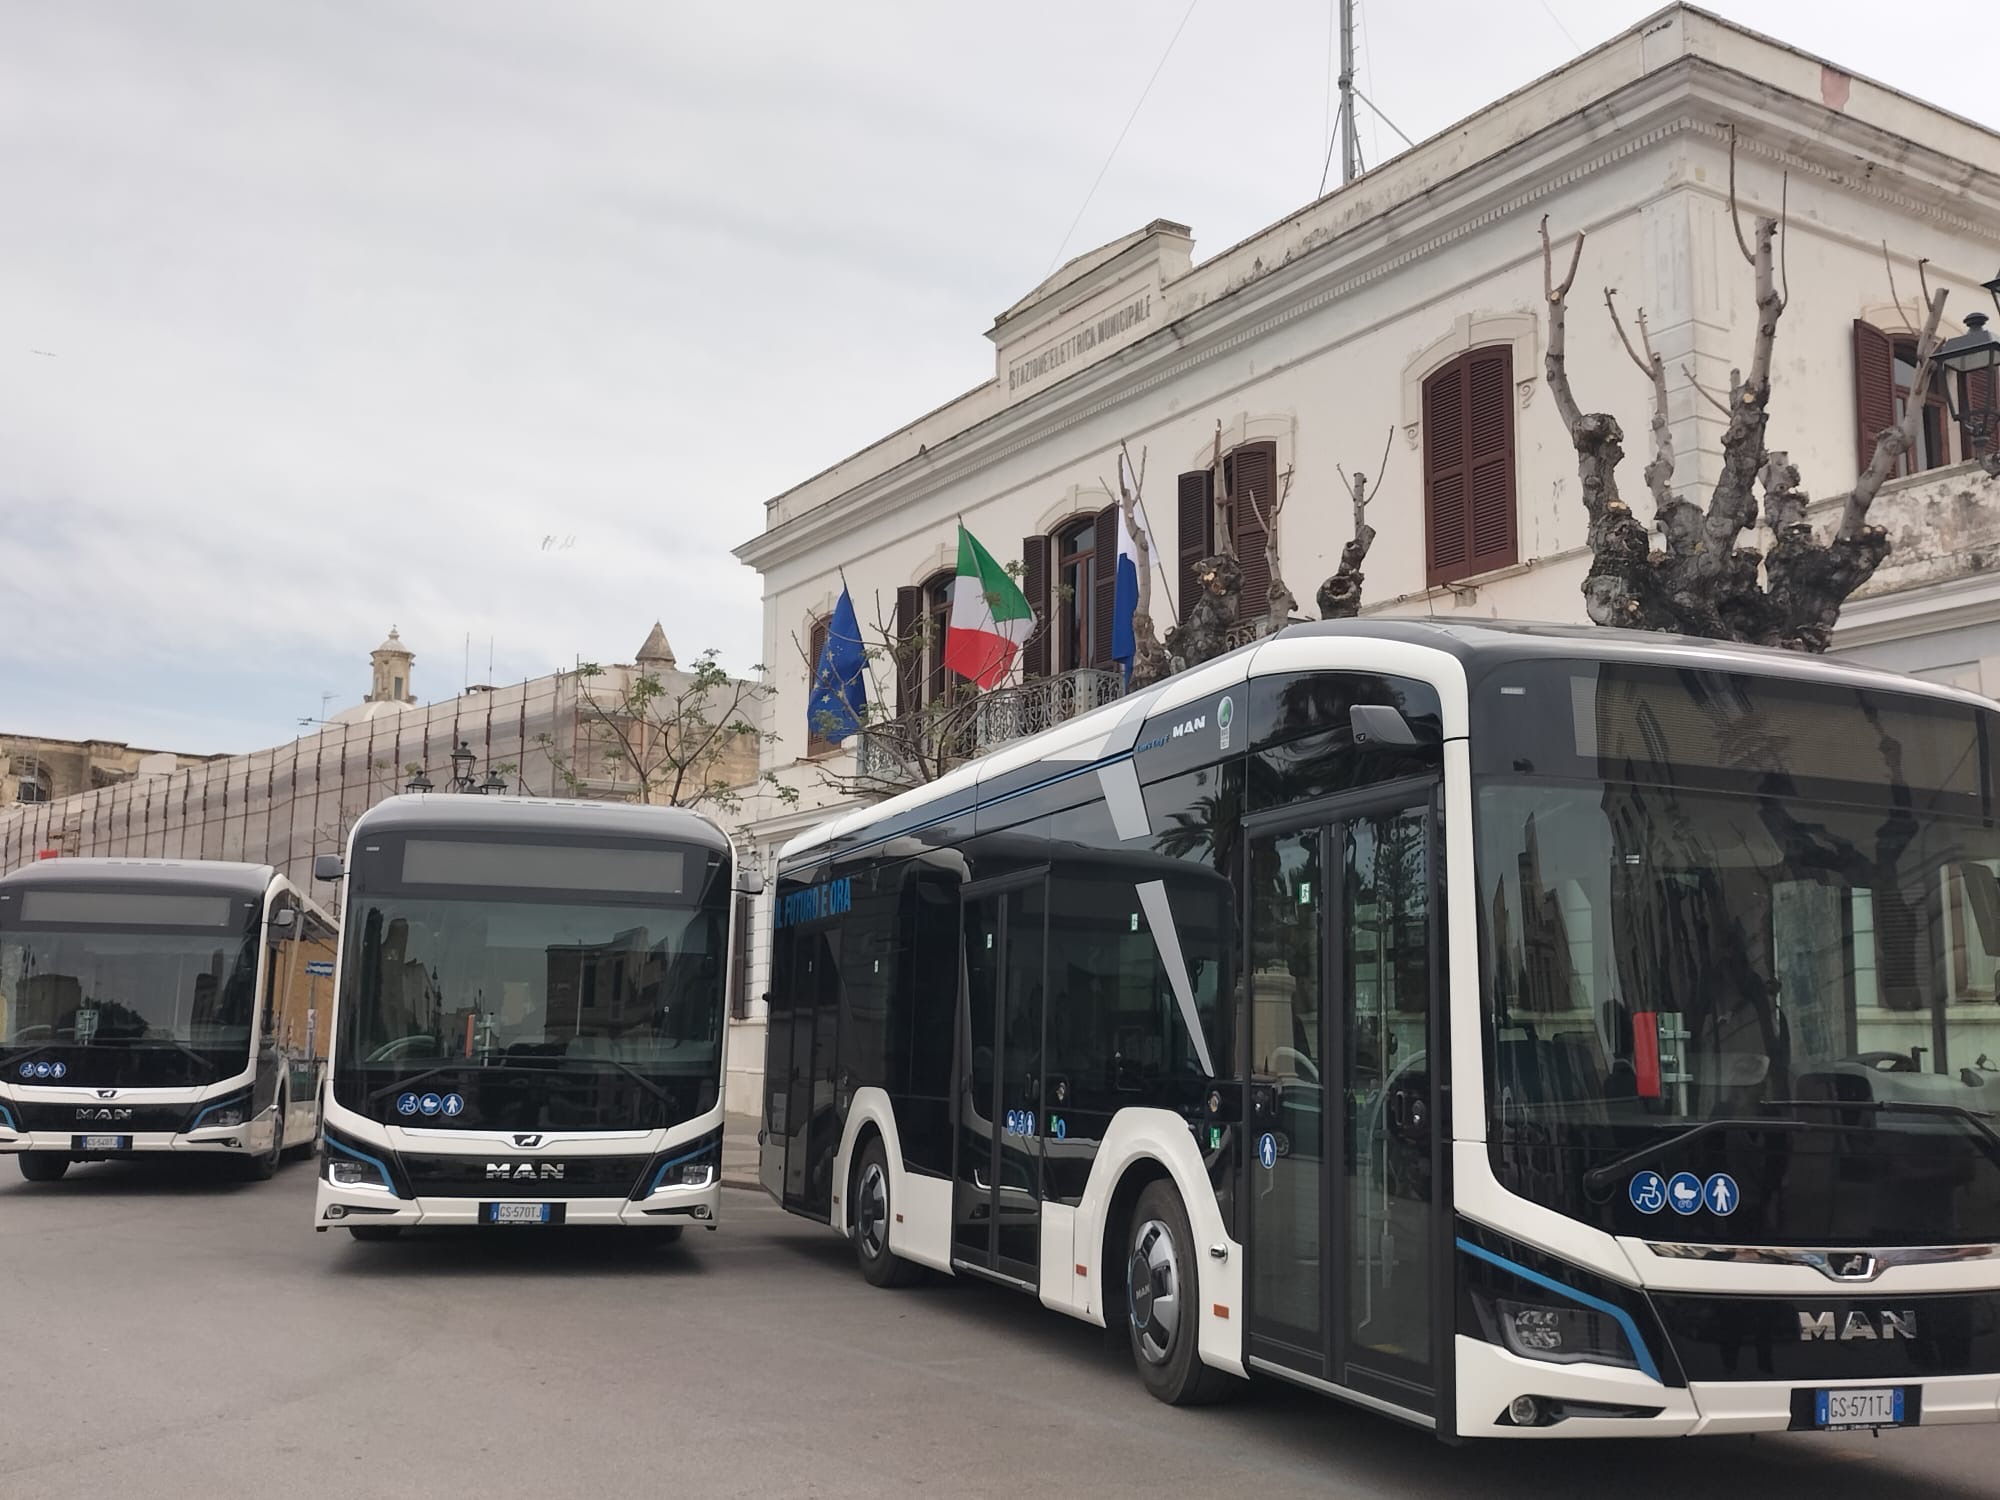 Galleria Trasporti, inaugurati gli 8 nuovi autobus a basse emissioni inquinanti dei Comuni di Fasano e Trani finanziati dalla Regione con Smart go city - Diapositiva 2 di 4